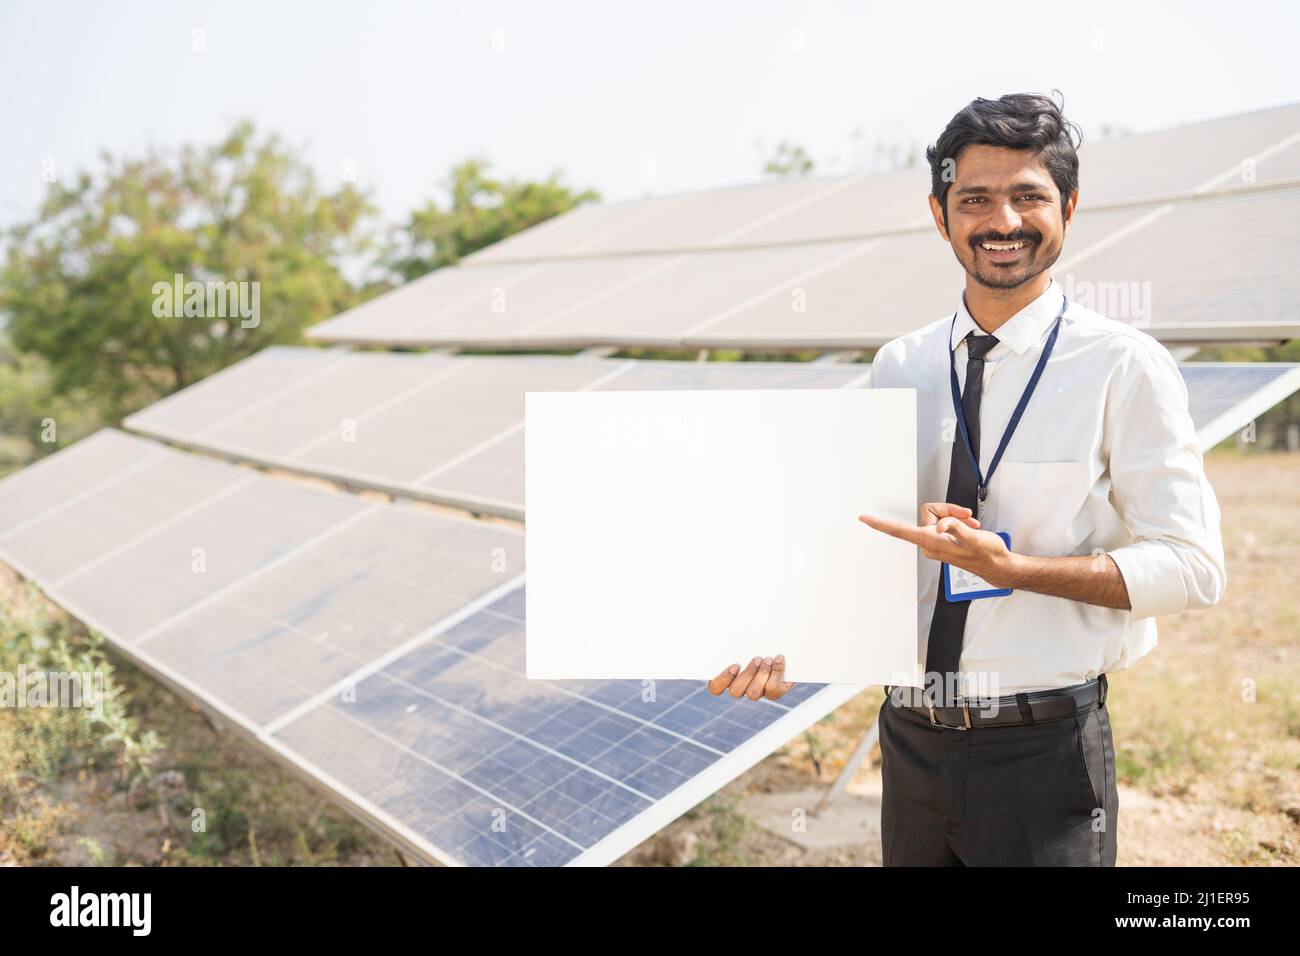 Lächelnder Bankbeamter zeigt weißes leeres Brett, indem er vor dem Solarpanel auf Ackerland die Kamera anschaut - Konzept von Botschaft, Werbung, Finanzen Stockfoto